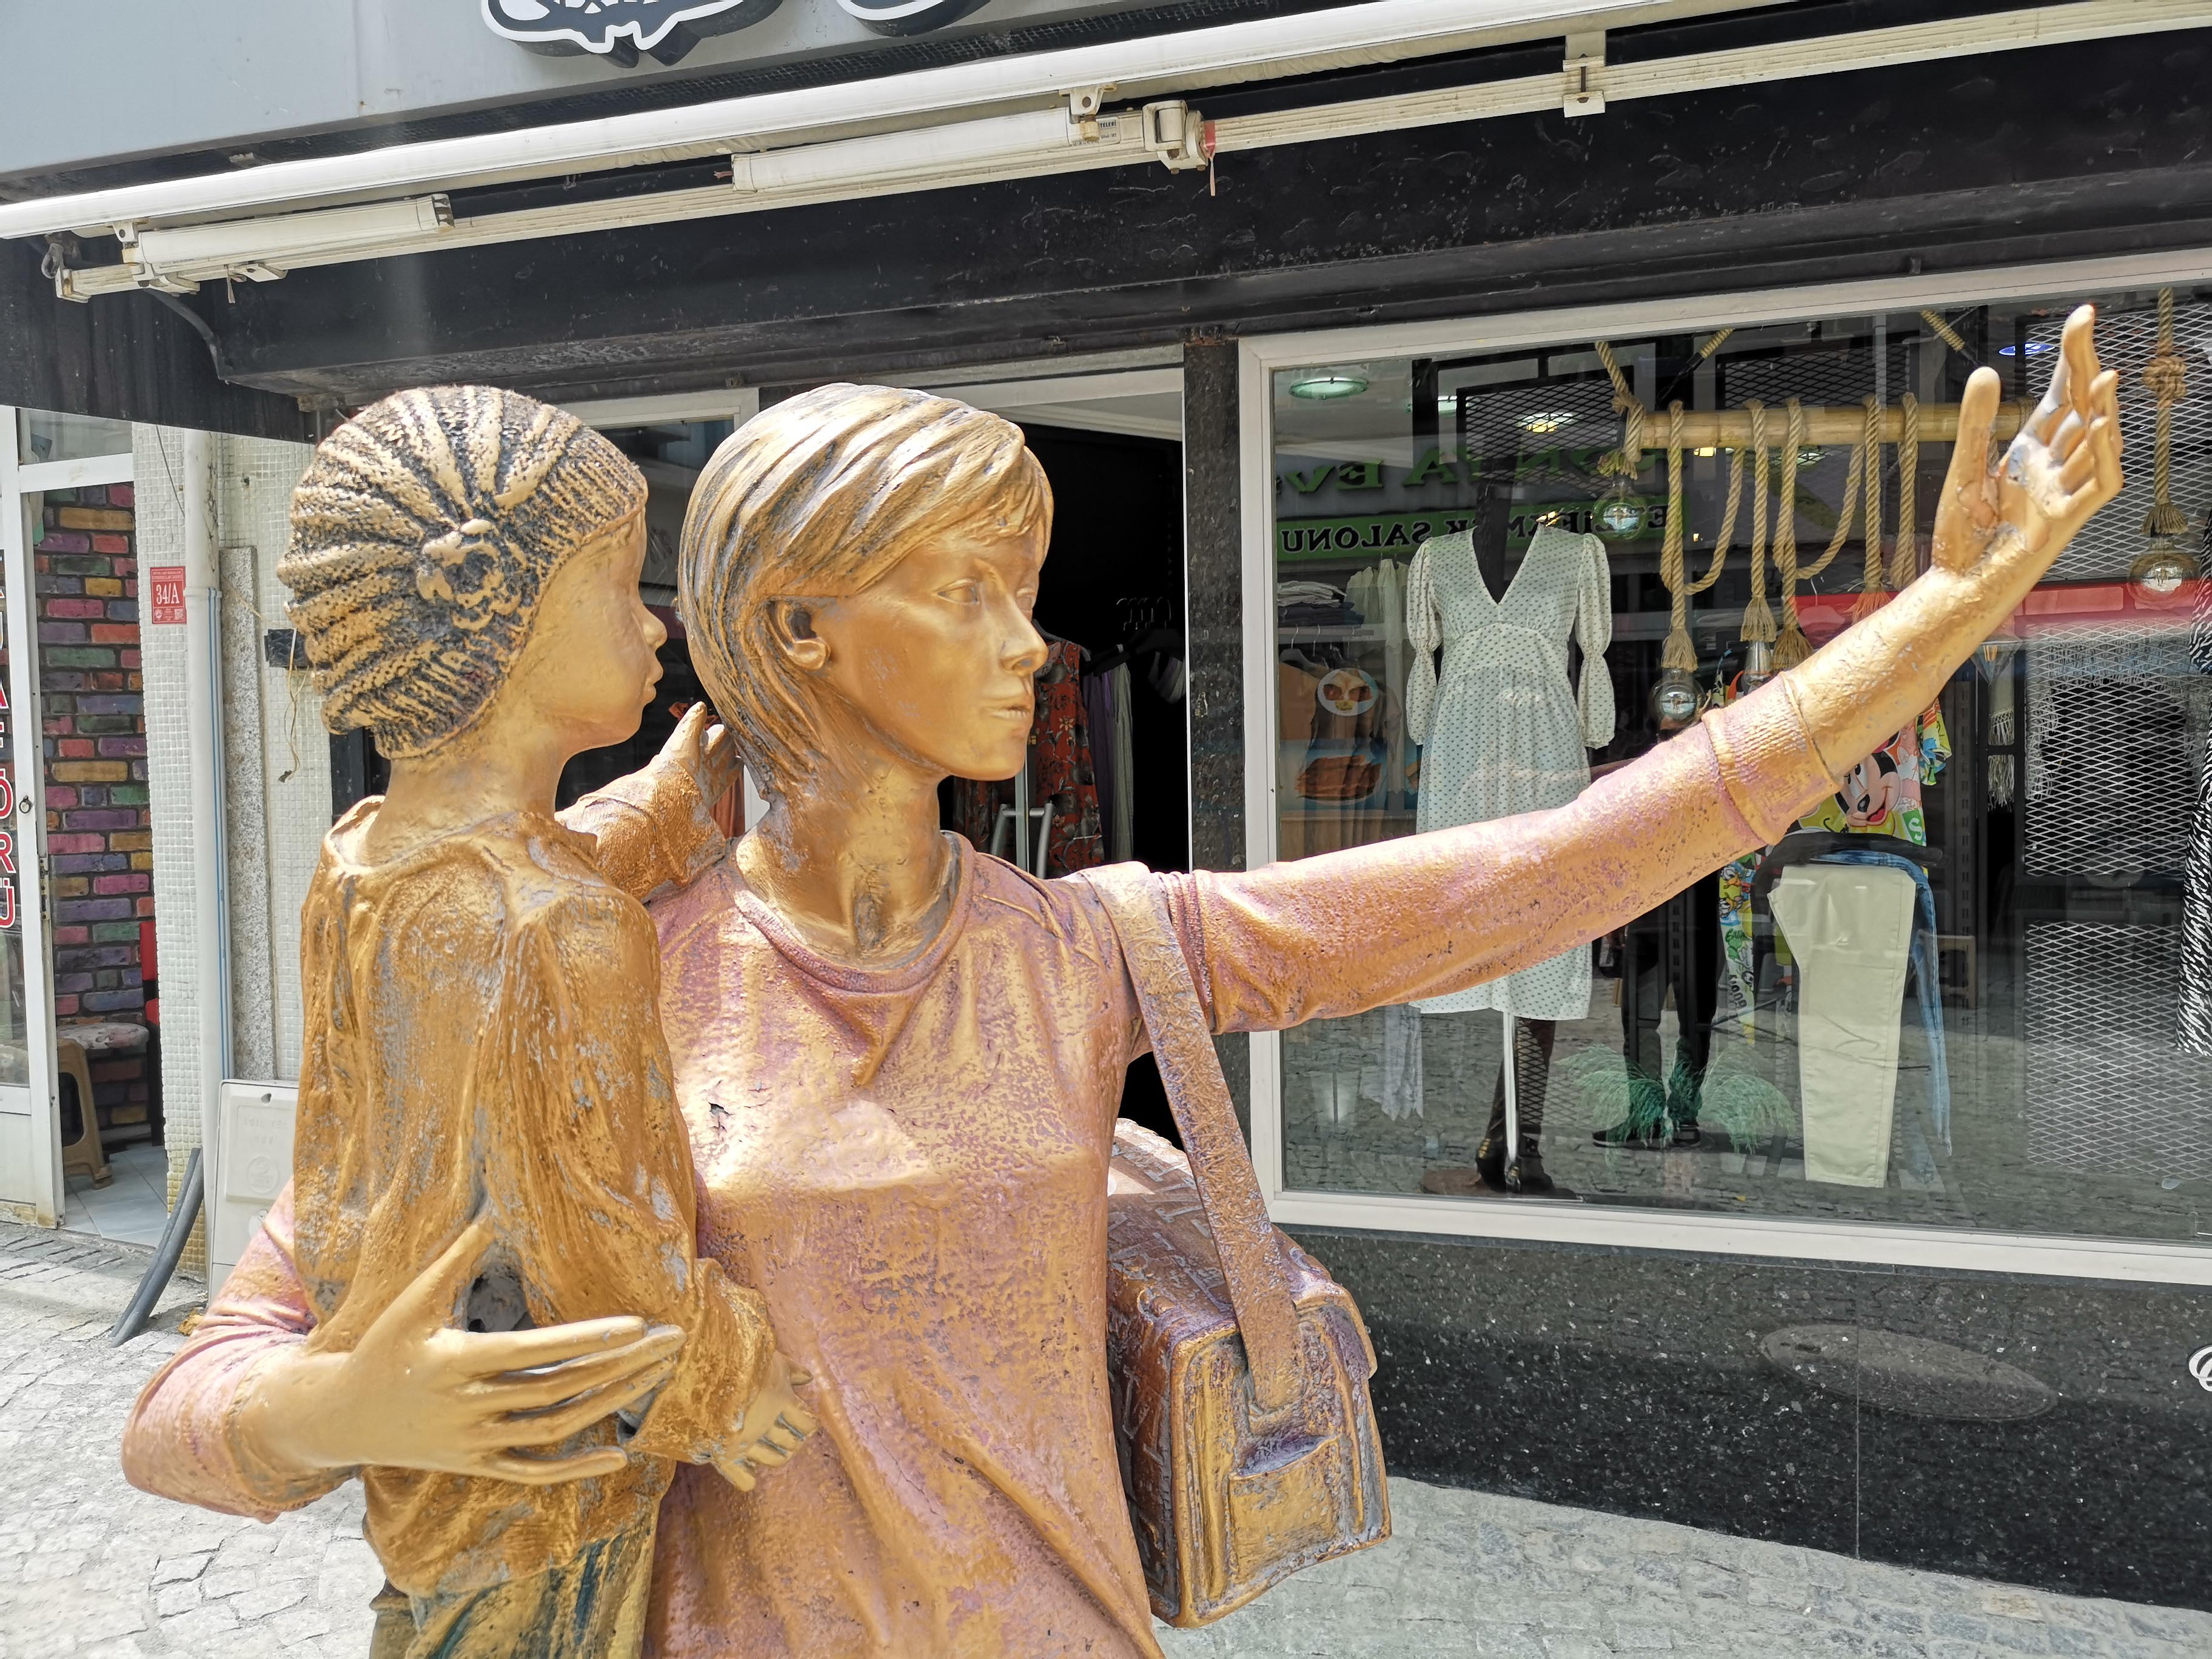 selfie-yapan-kadin-heykelinin-elindeki-telefon-calindi-4801-dhaphoto1.jpg